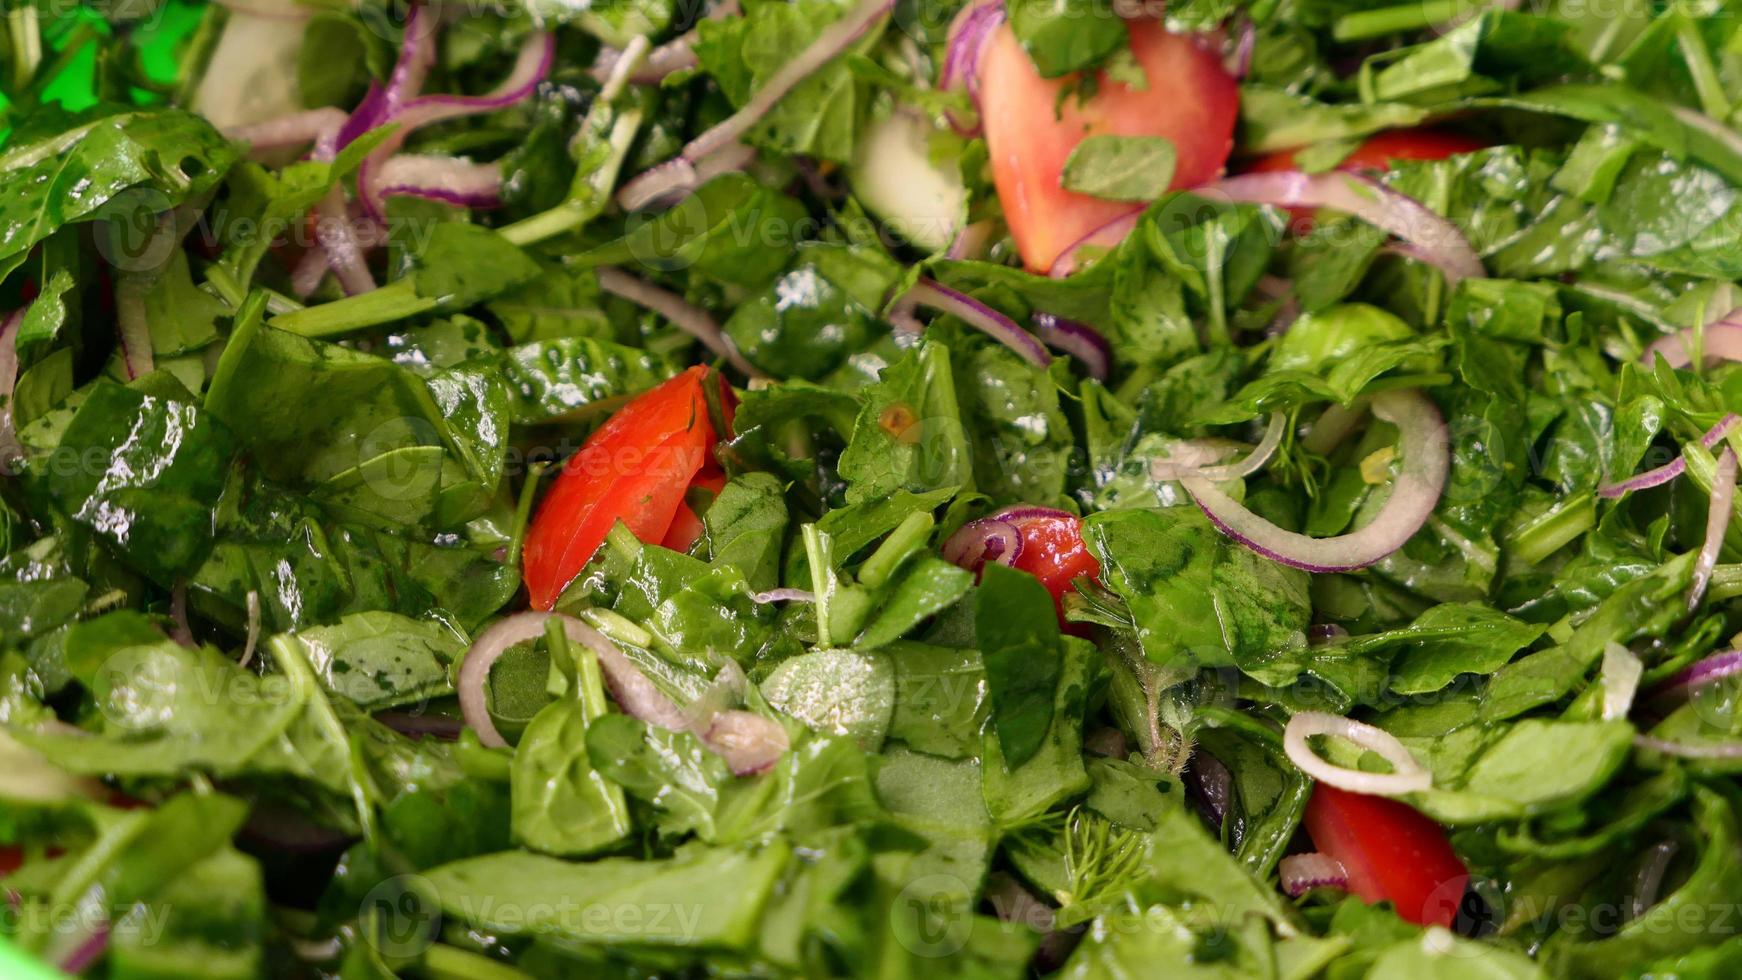 insalata con lattuga e un' varietà di fresco verdure foto